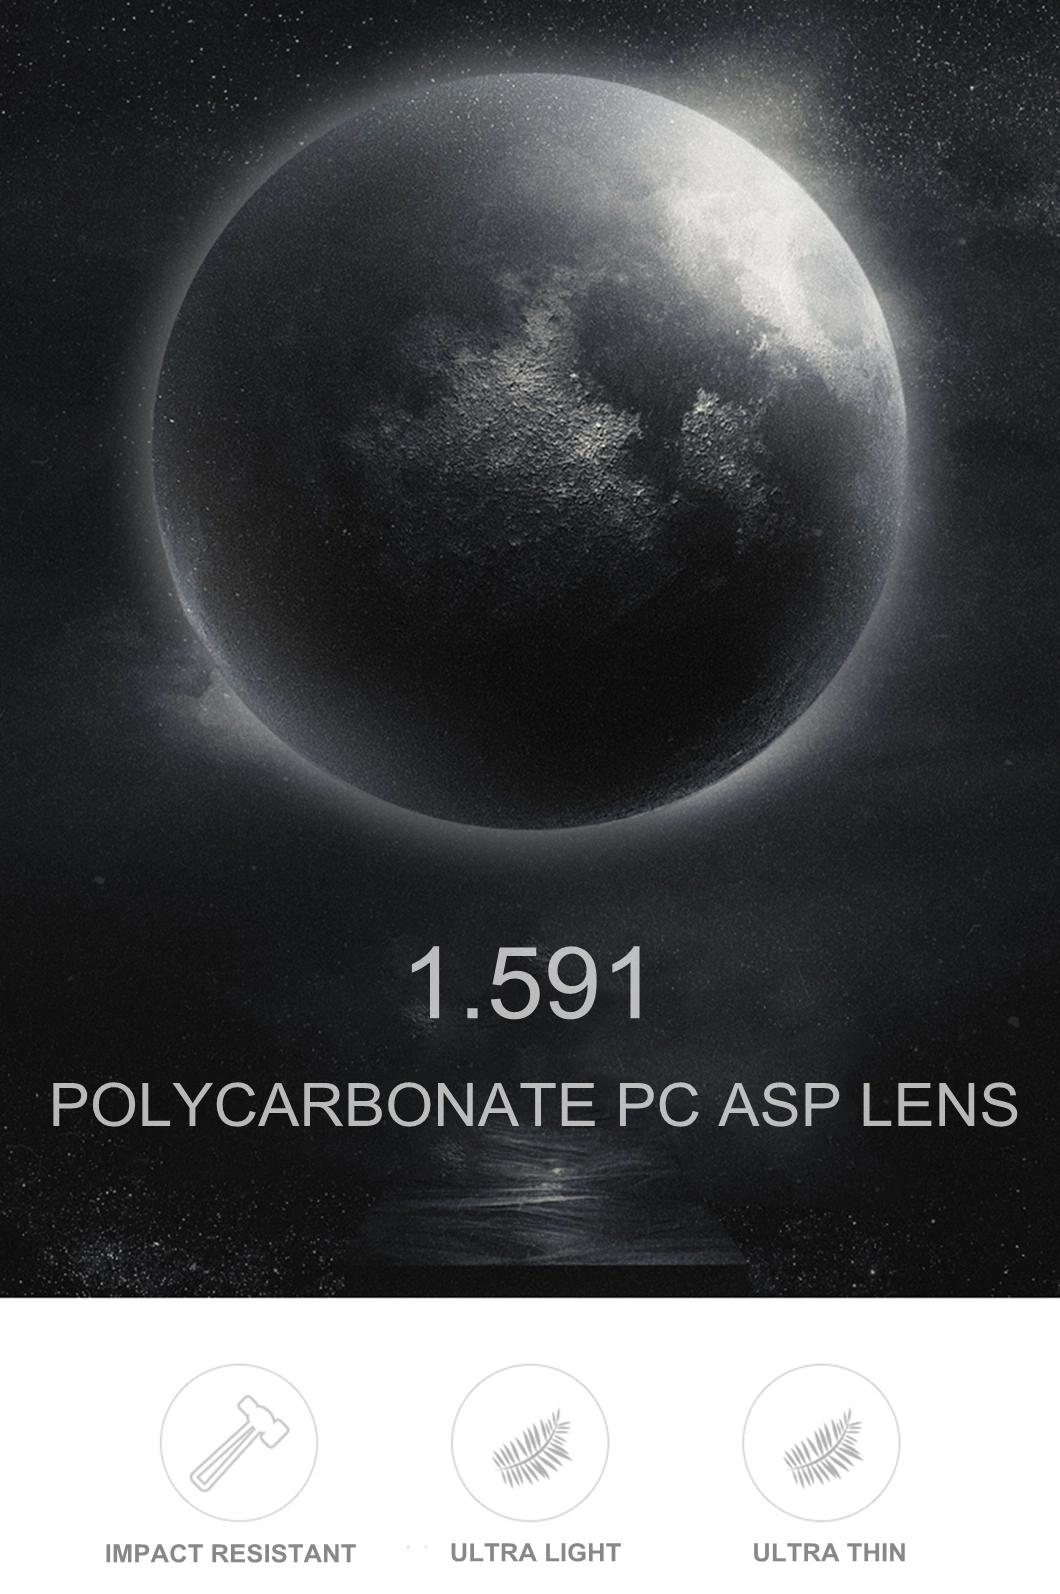 Polycarbonate 1.59 Lenses Progressive Hmc Cr 39 Optical Lens Spectacle Lens